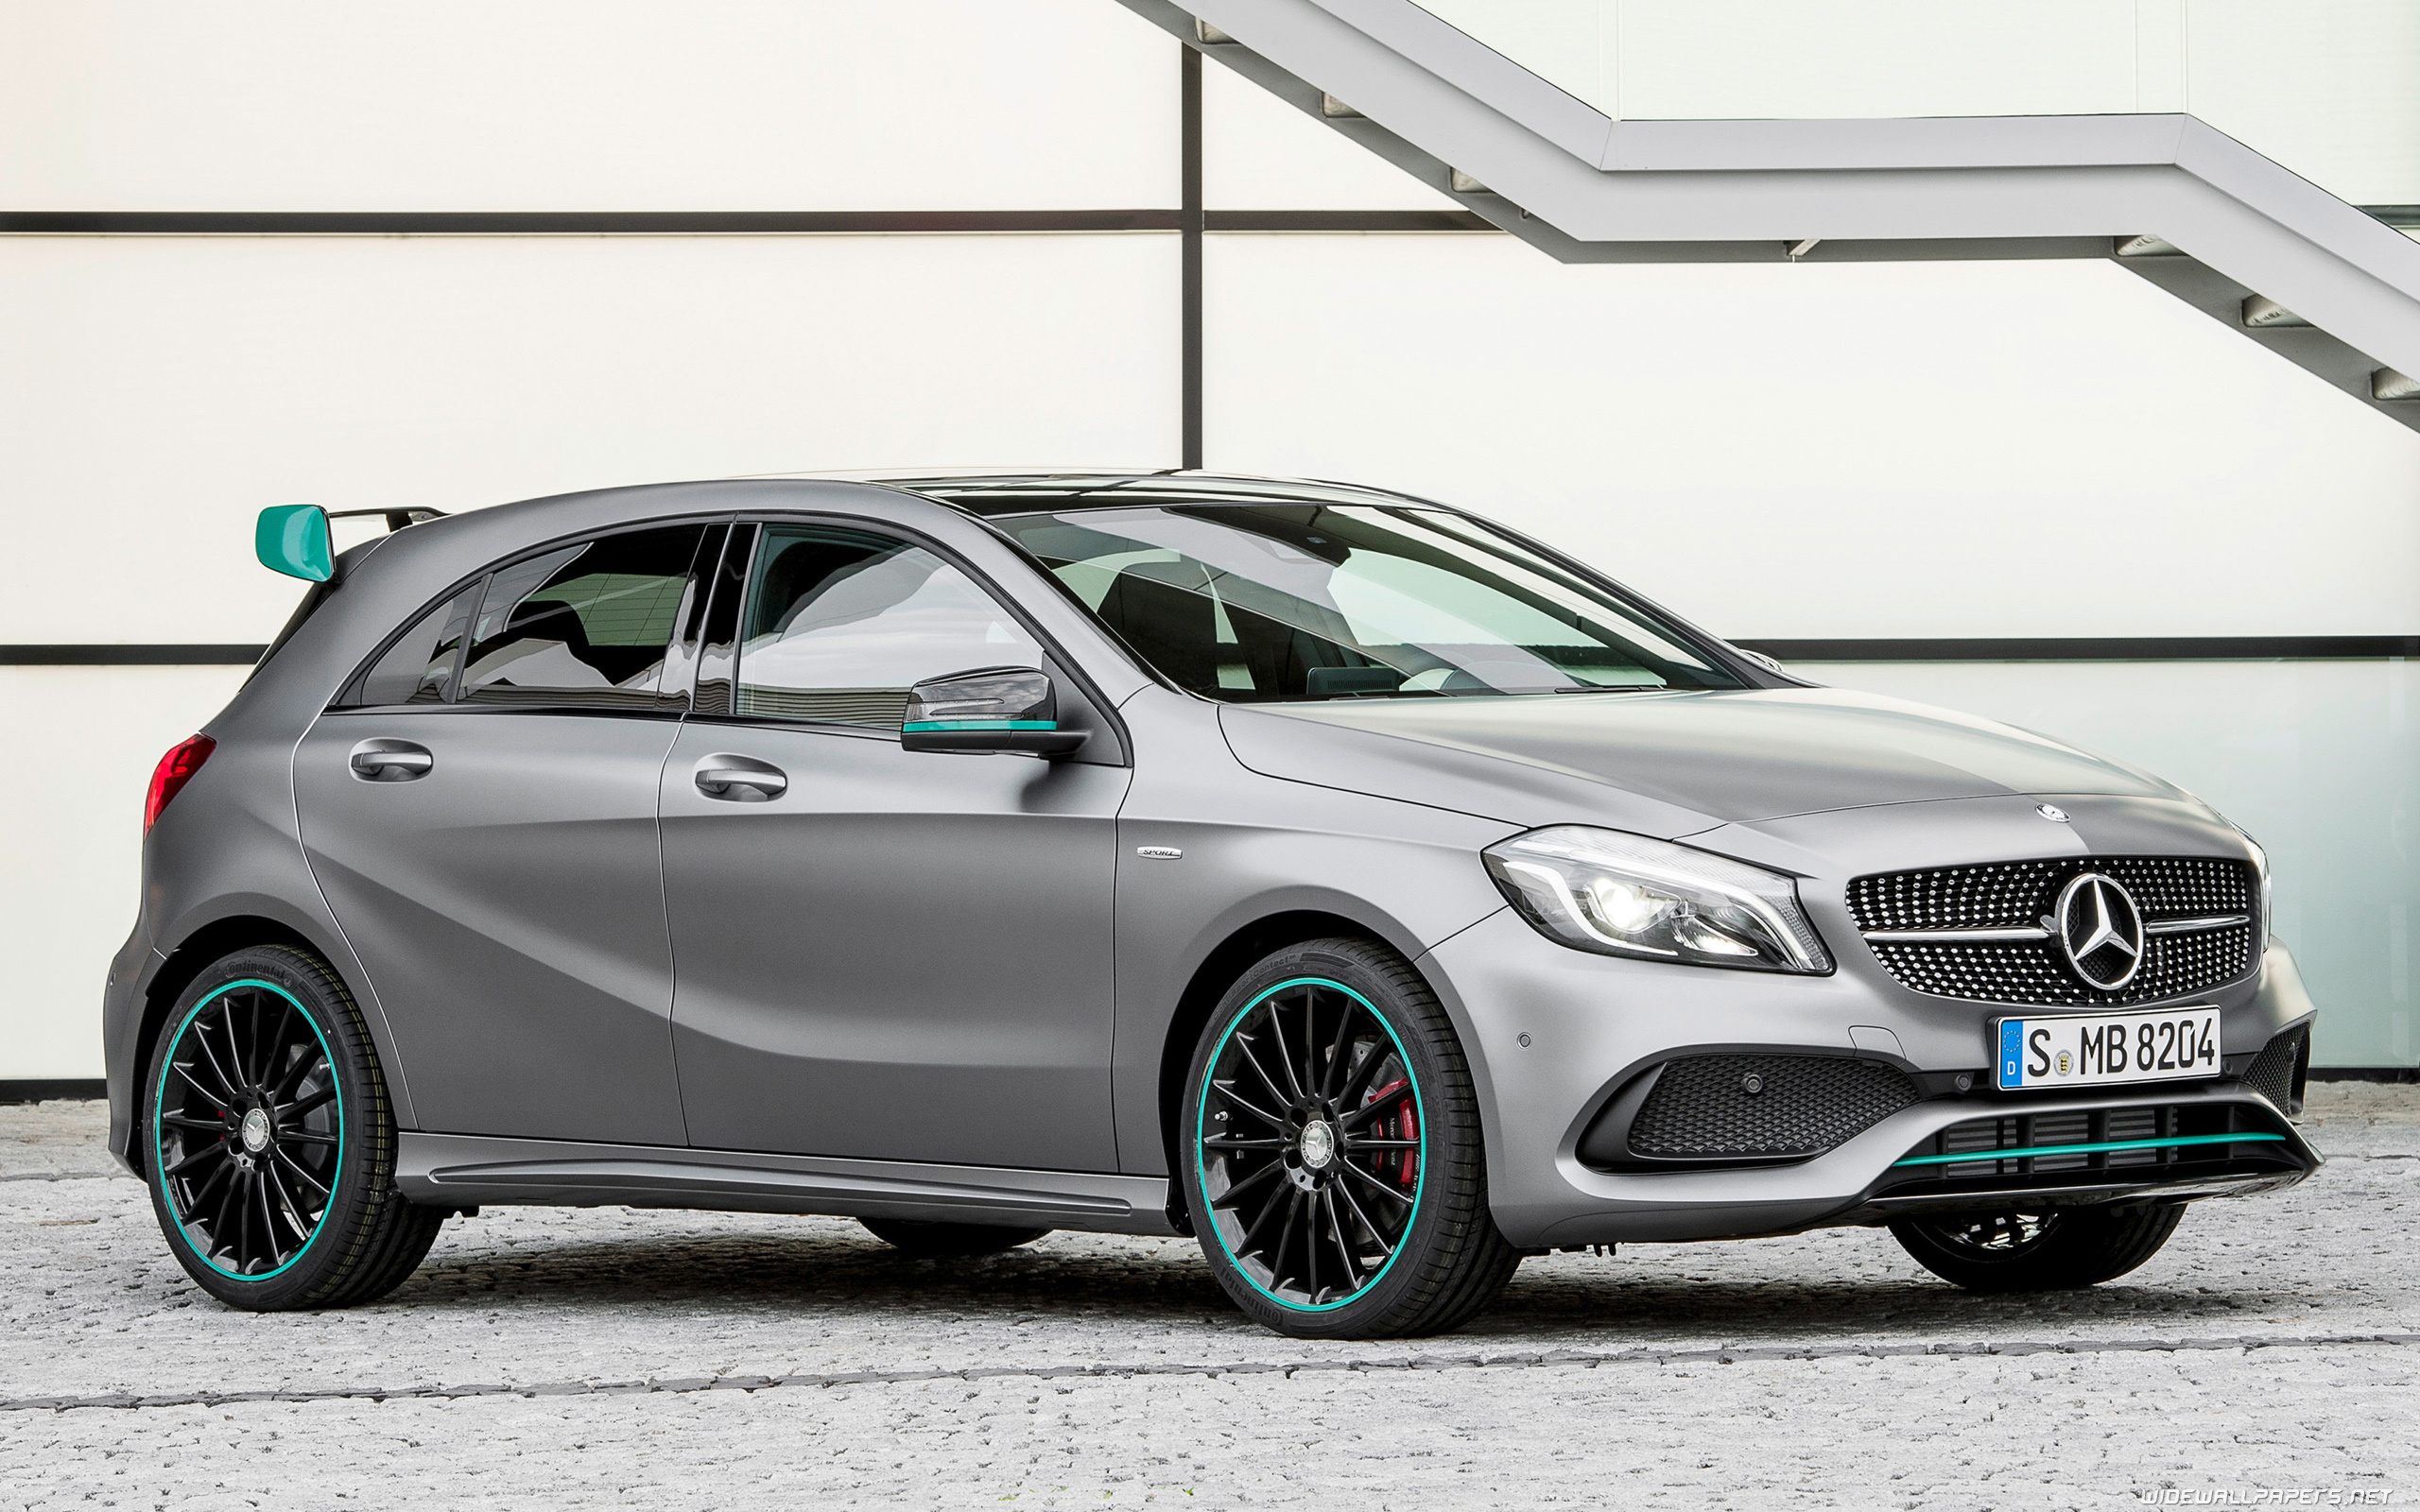 Mercedes-Benz A-Class, Desirable cars, Stunning wallpapers, 4K ultra HD, 2560x1600 HD Desktop